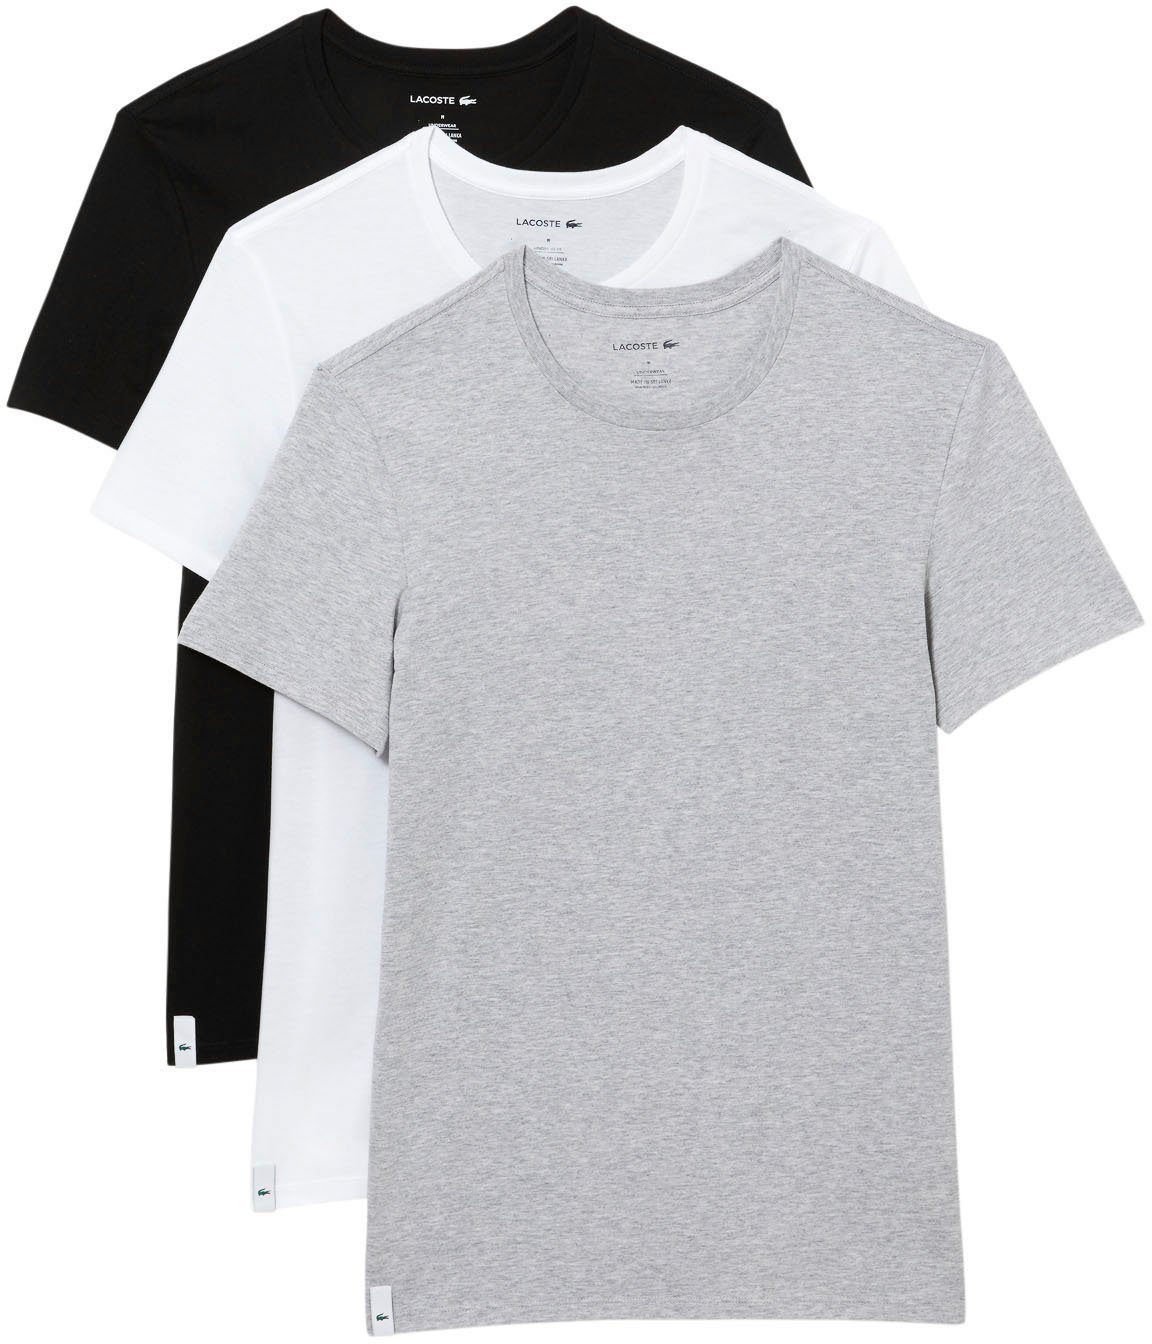 Sportliche Lacoste T-Shirts für Herren online kaufen | OTTO